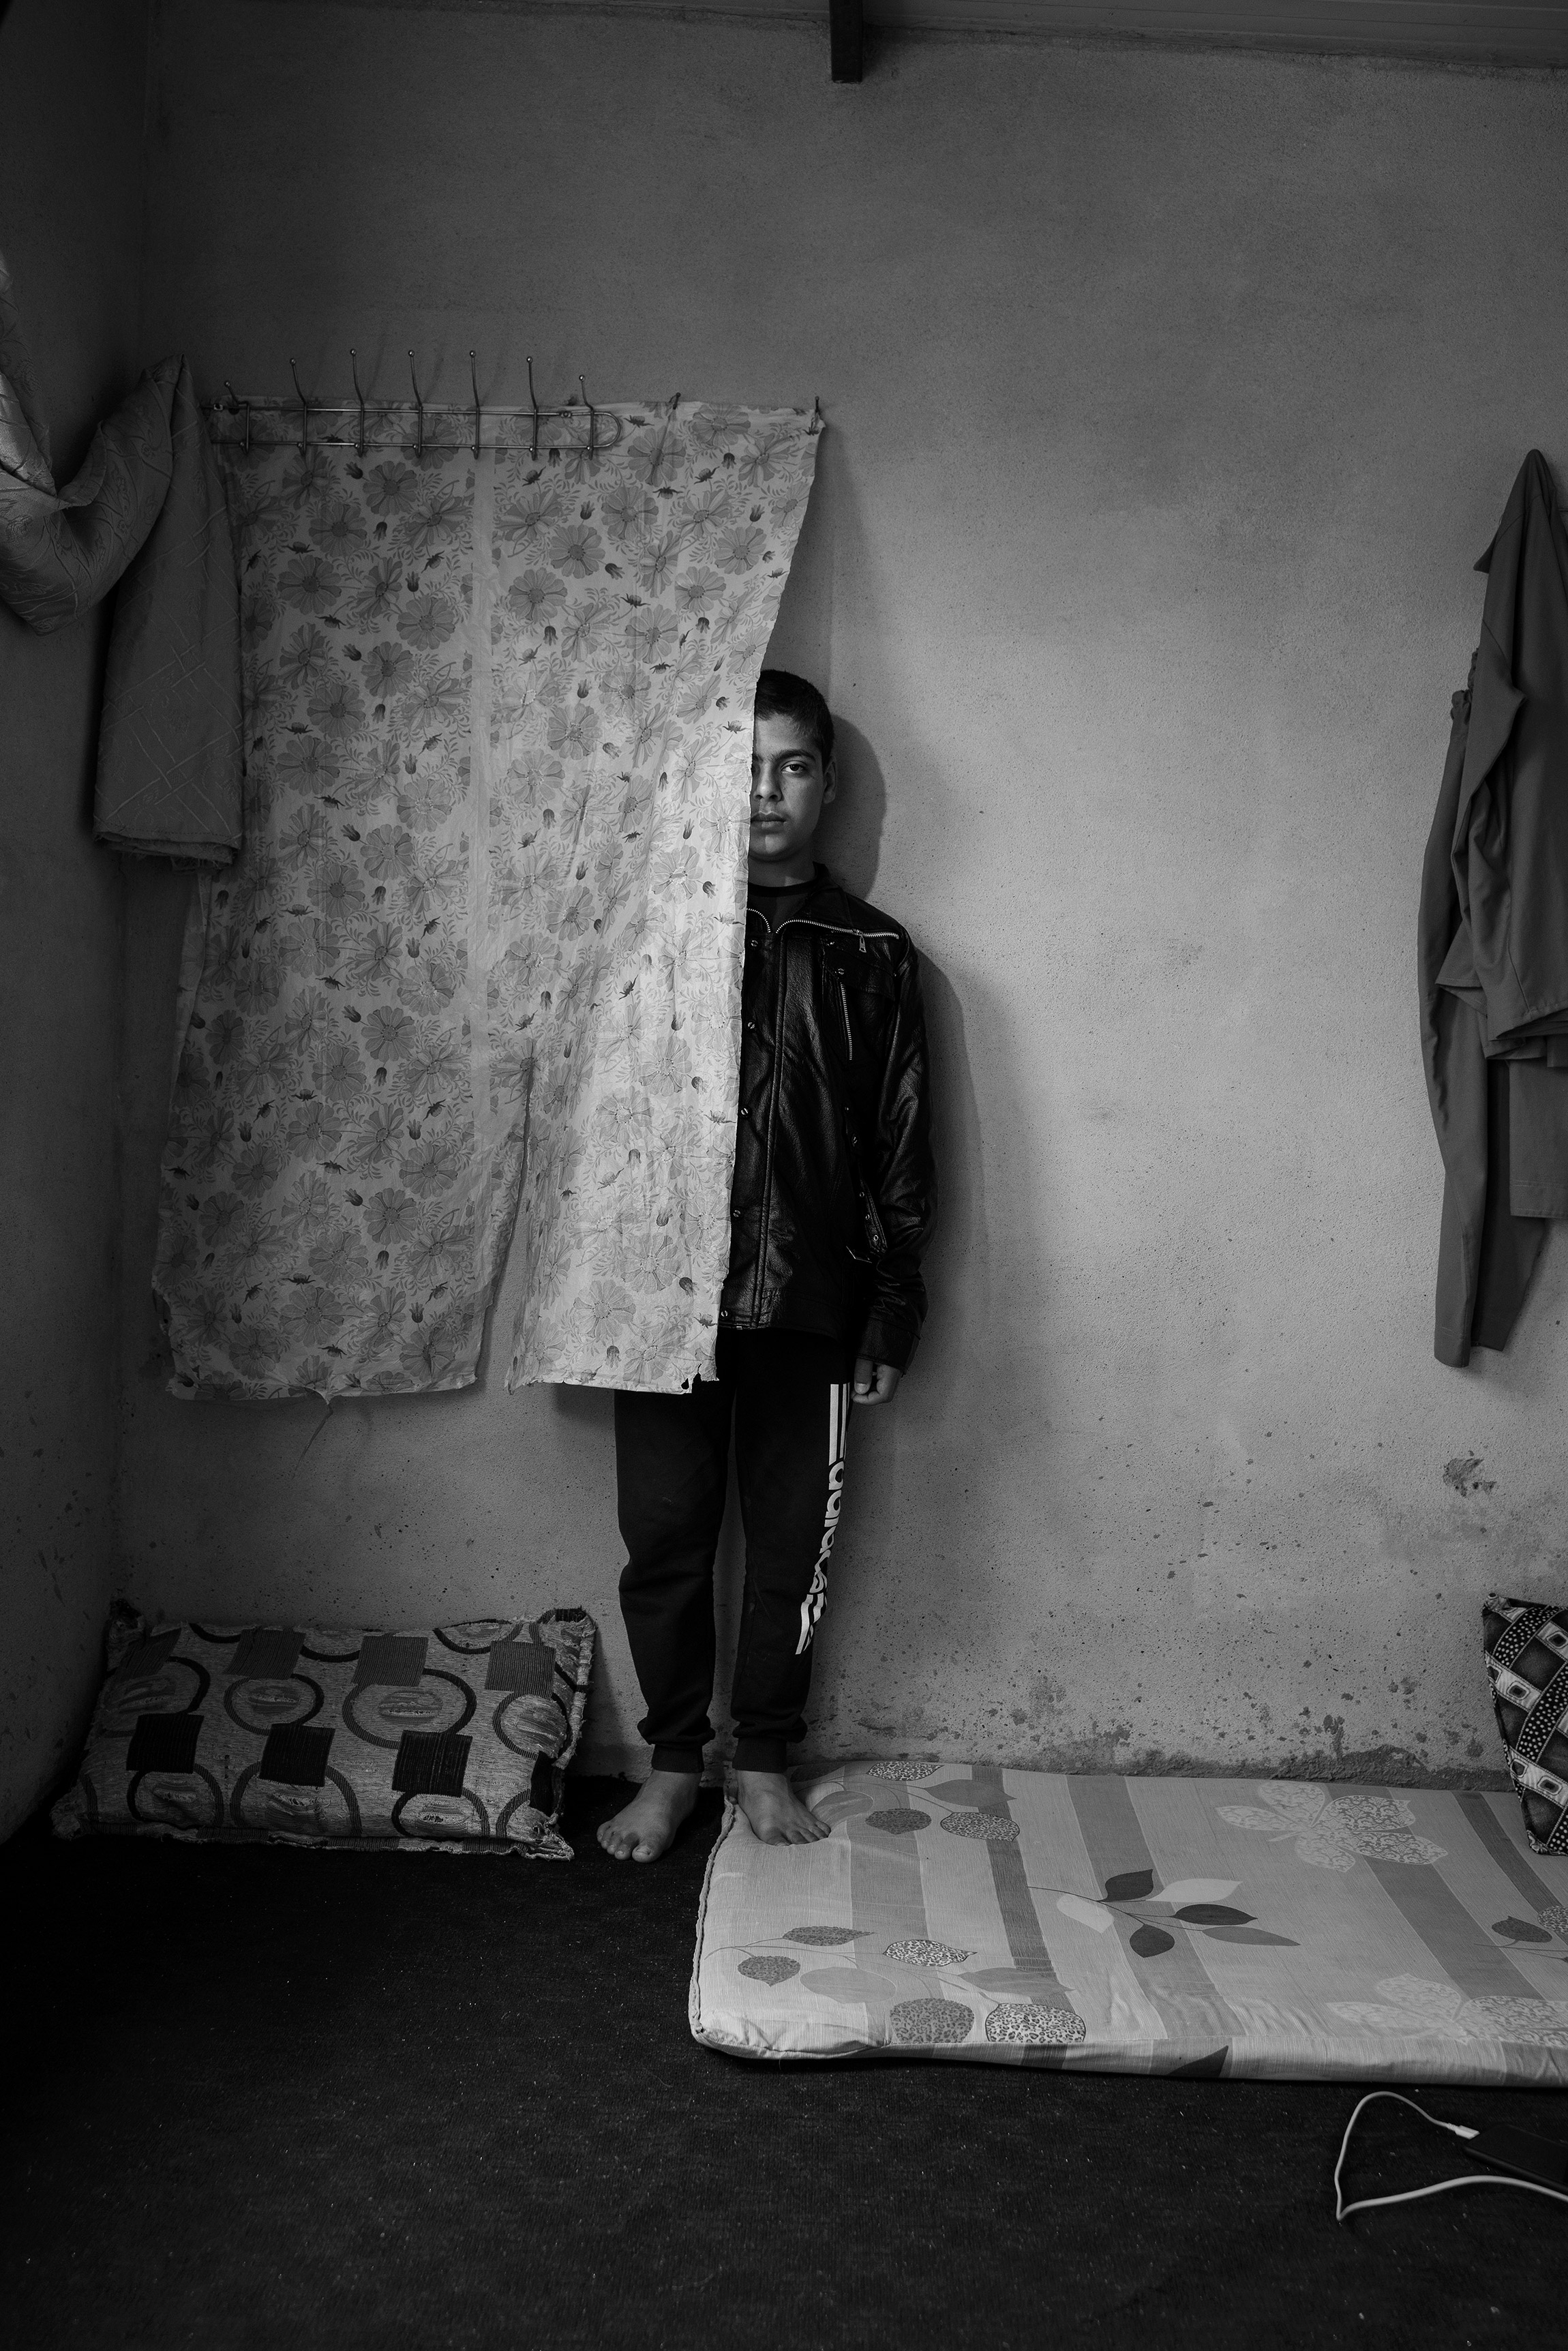 Автор:  Адам Фергюсон, для The New York Times Magazine

Проект &laquo;Похищенные&raquo;. На фото 11-летний Резан, который был похищен ИГ (террористическая организация &laquo;Исламское государство&raquo;, запрещена в России) в 2014 году и освобожден в начале 2019-го в лагере вынужденных переселенцев Ханке в Дохуке, Иракский Курдистан.

После того&nbsp;как ИГ&nbsp;отступила с территории вокруг Мосула на севере Ирака, были освобождены тысячи заключенных. Фотограф снял портреты перемещенных езидов и других меньшинств, которые пострадали от боевиков&nbsp;ИГ, в лагерях для беженцев на севере Ирака. Езиды воспринимаются боевиками как поклоняющиеся дьяволу. Когда боевики оккупировали земли езидов на севере Ирака в 2014 году, около 5 тыс. мужчин были убиты, женщин и девочек похищали и принуждали к сексуальному рабству, а мальчиков тренировали как будущих солдат. Около 500 тыс. езидов были вынуждены бежать
